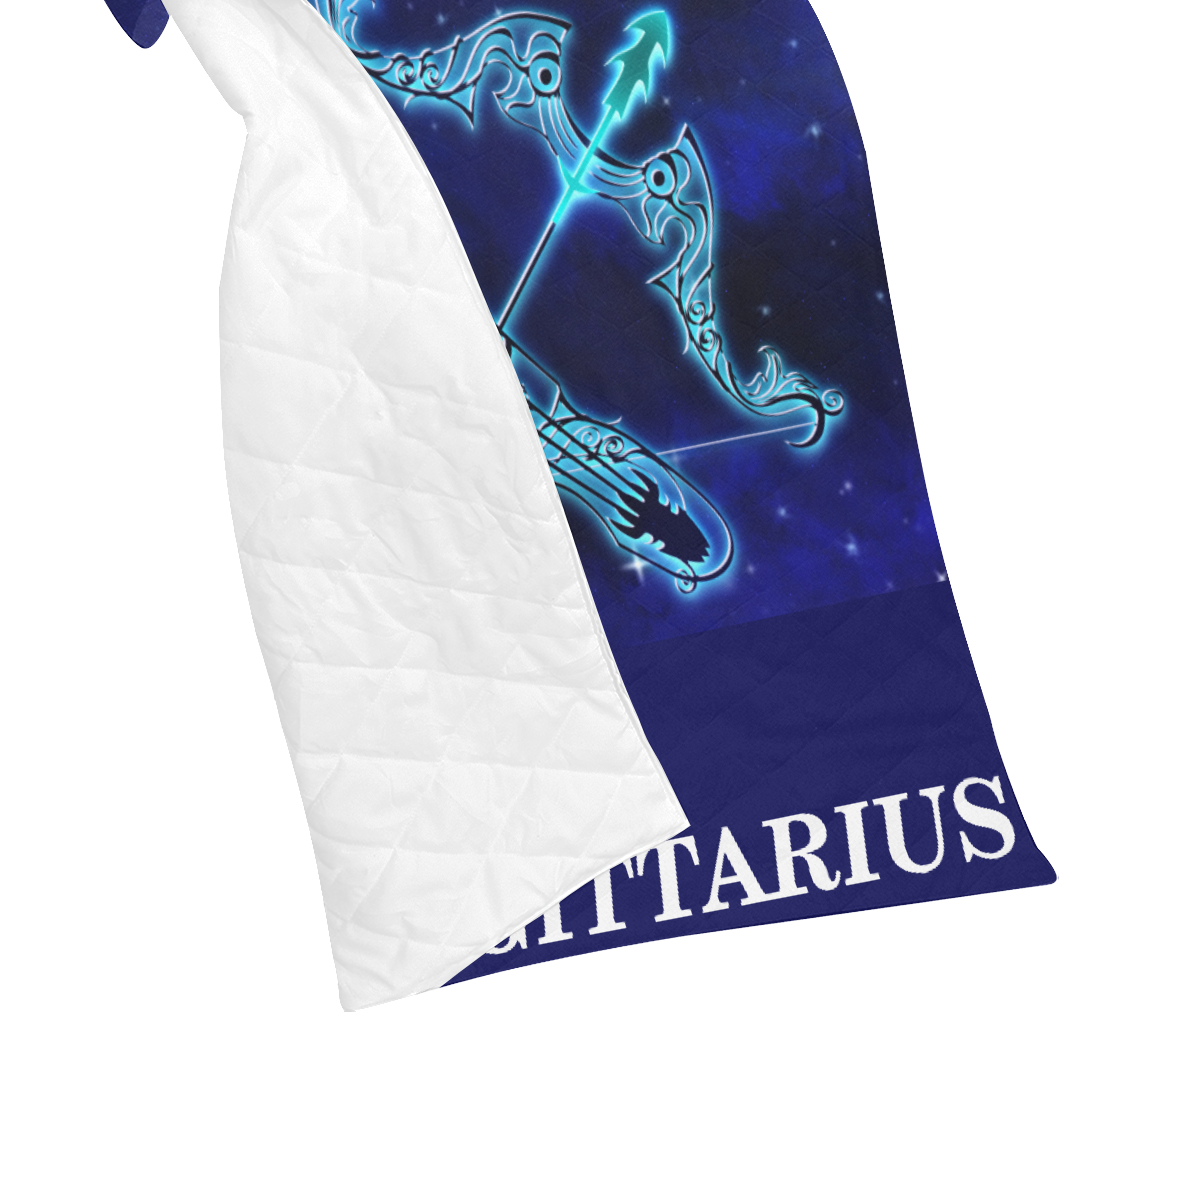 Sagittarius design Quilt 40"x50"